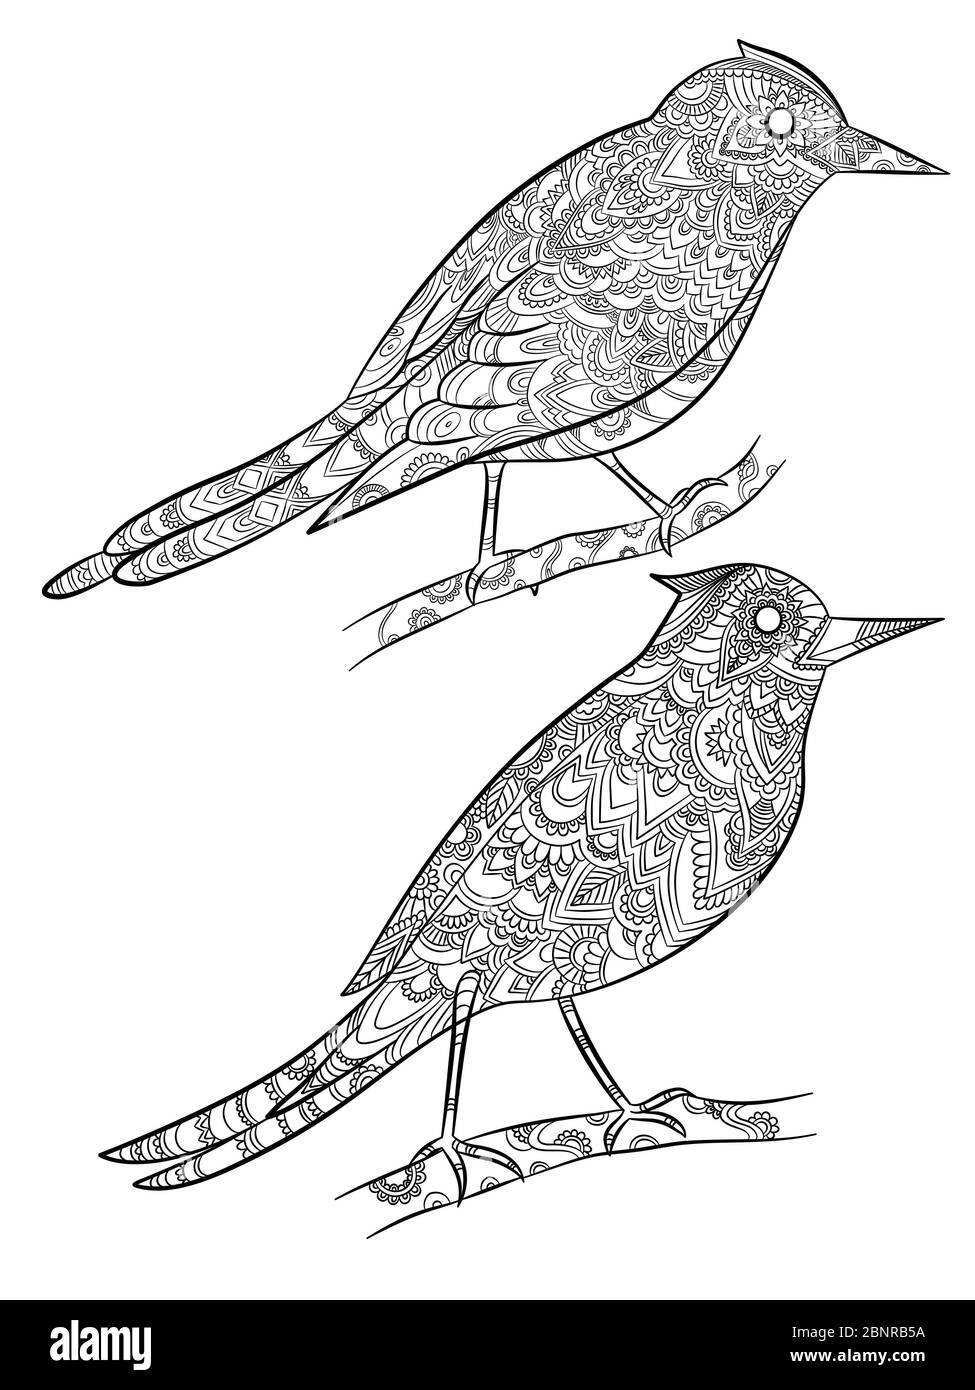 Pages de coloriage des oiseaux. canari sauvage volant avec motif floral linéaire sur leurs illustrations de dessin animé vecteur corps Illustration de Vecteur